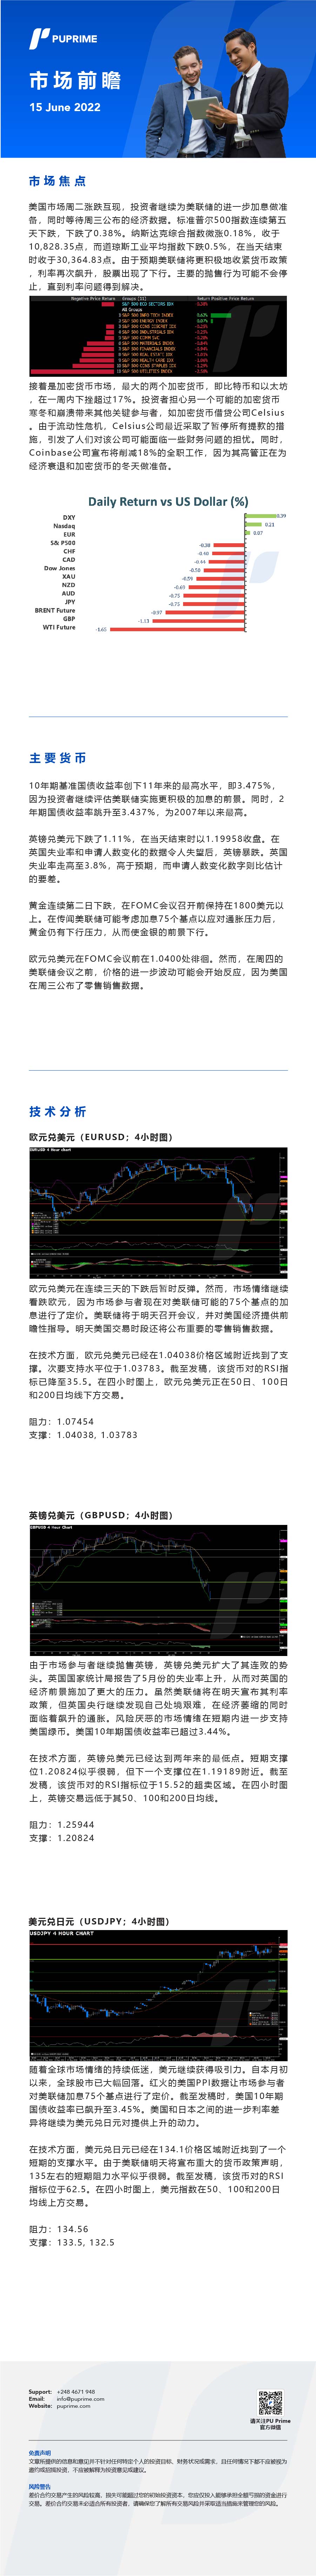 15062022 Daily Market Analysis__CHN.jpg